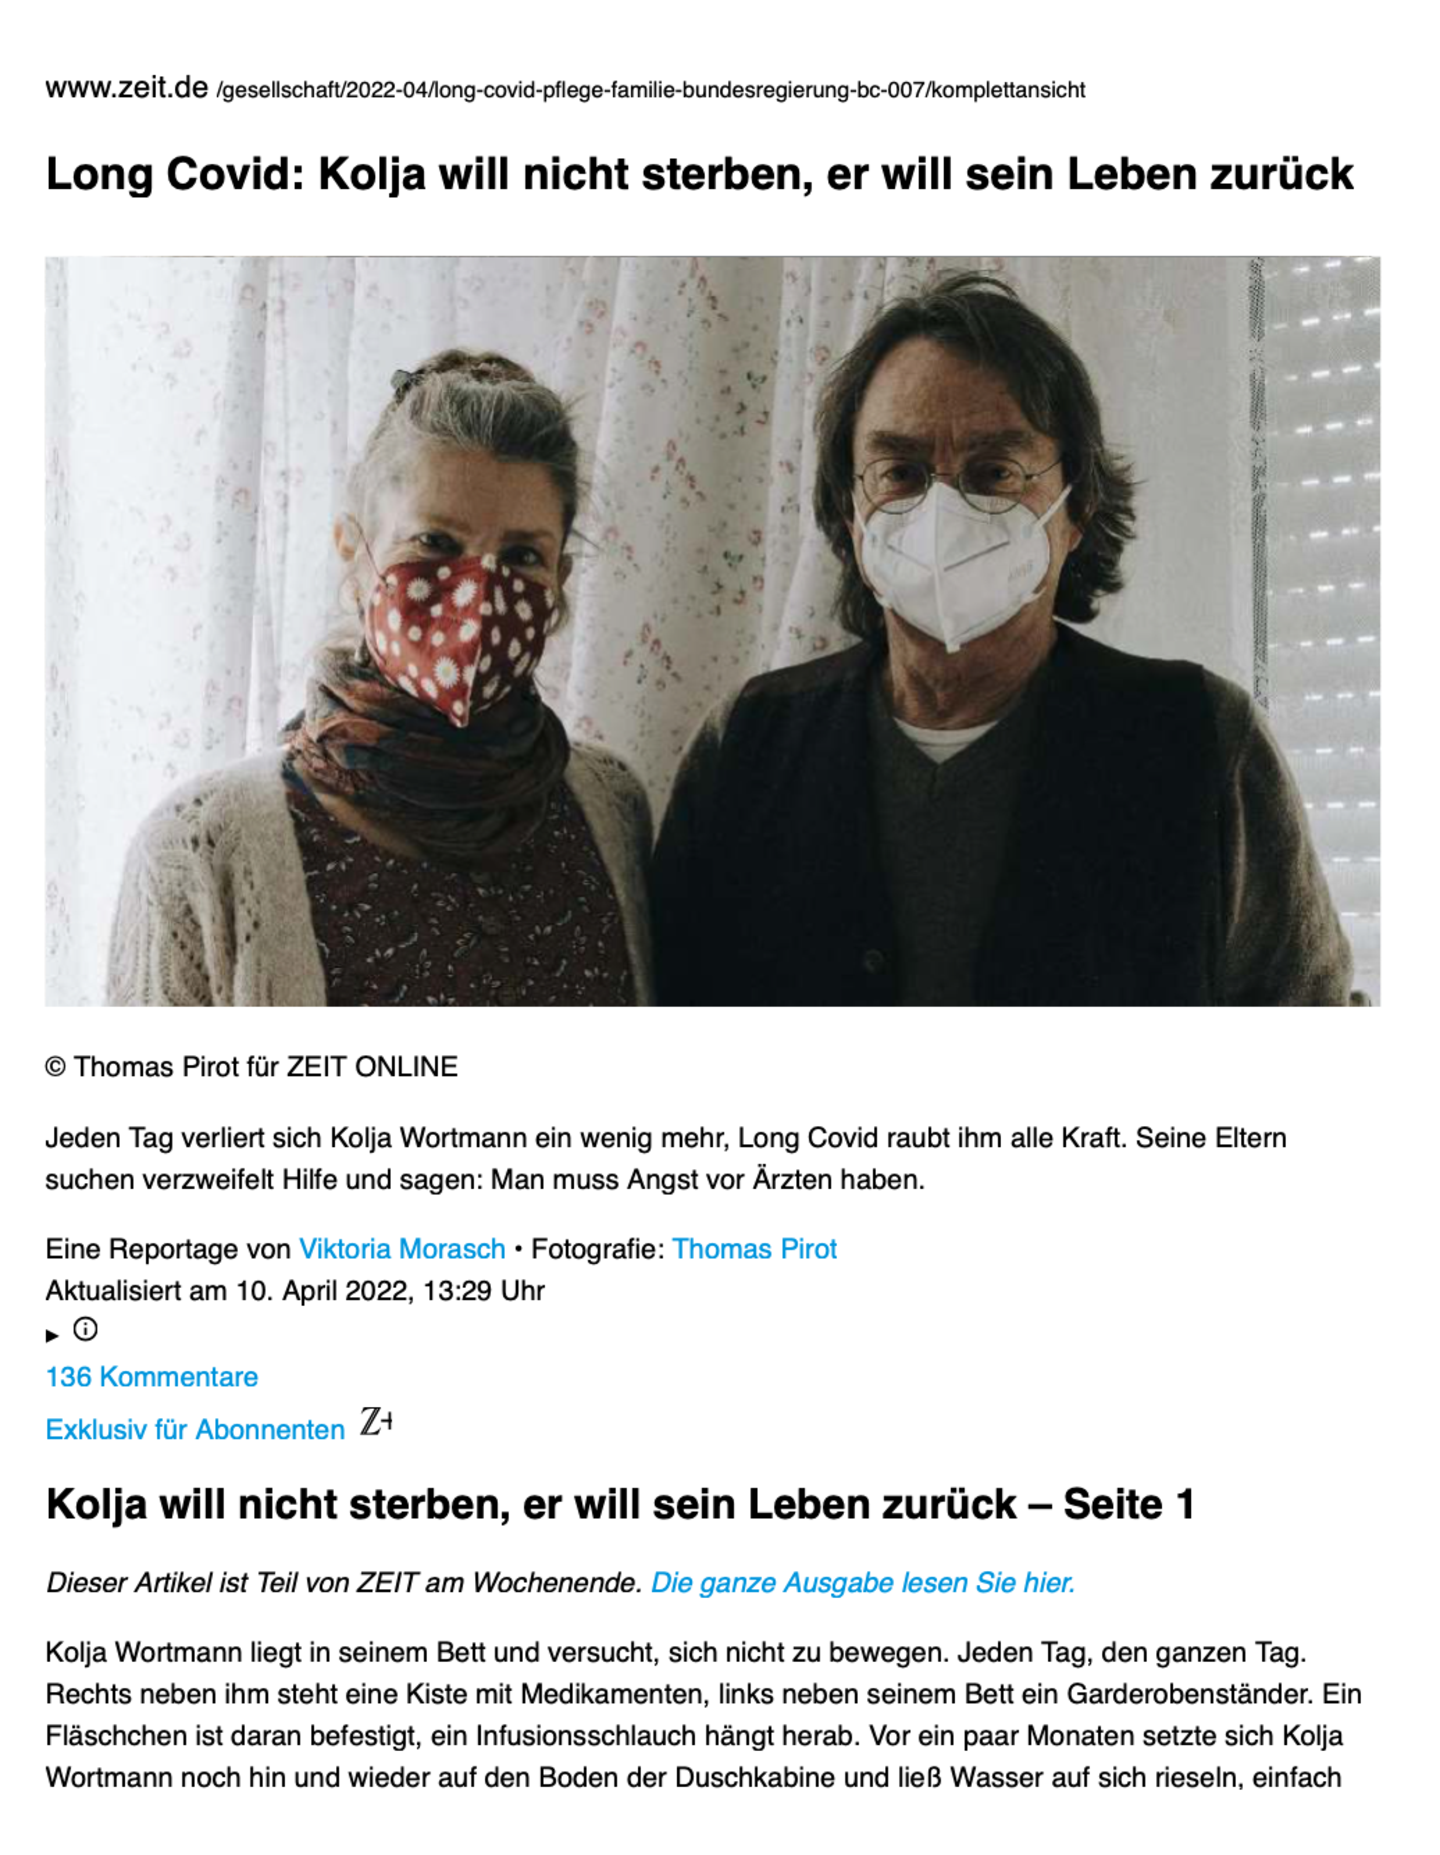 1. Seite des Beitrags des 2. Preises 2022 "Kolja will nicht sterben" von Zeit online.